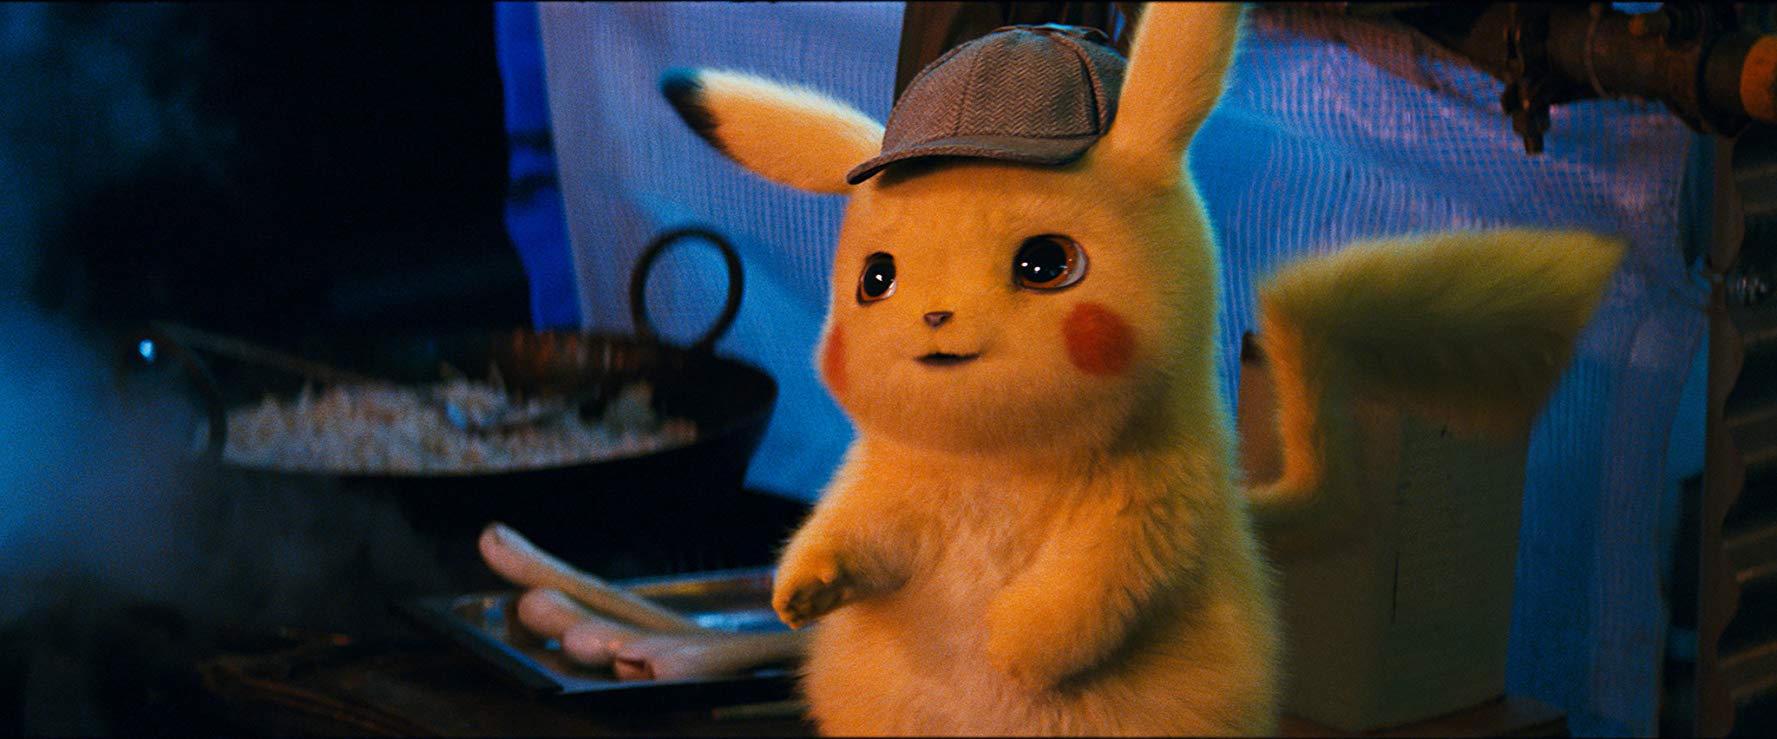 Pokmon Detective Pikachu - le film d'animation et d'action en direct